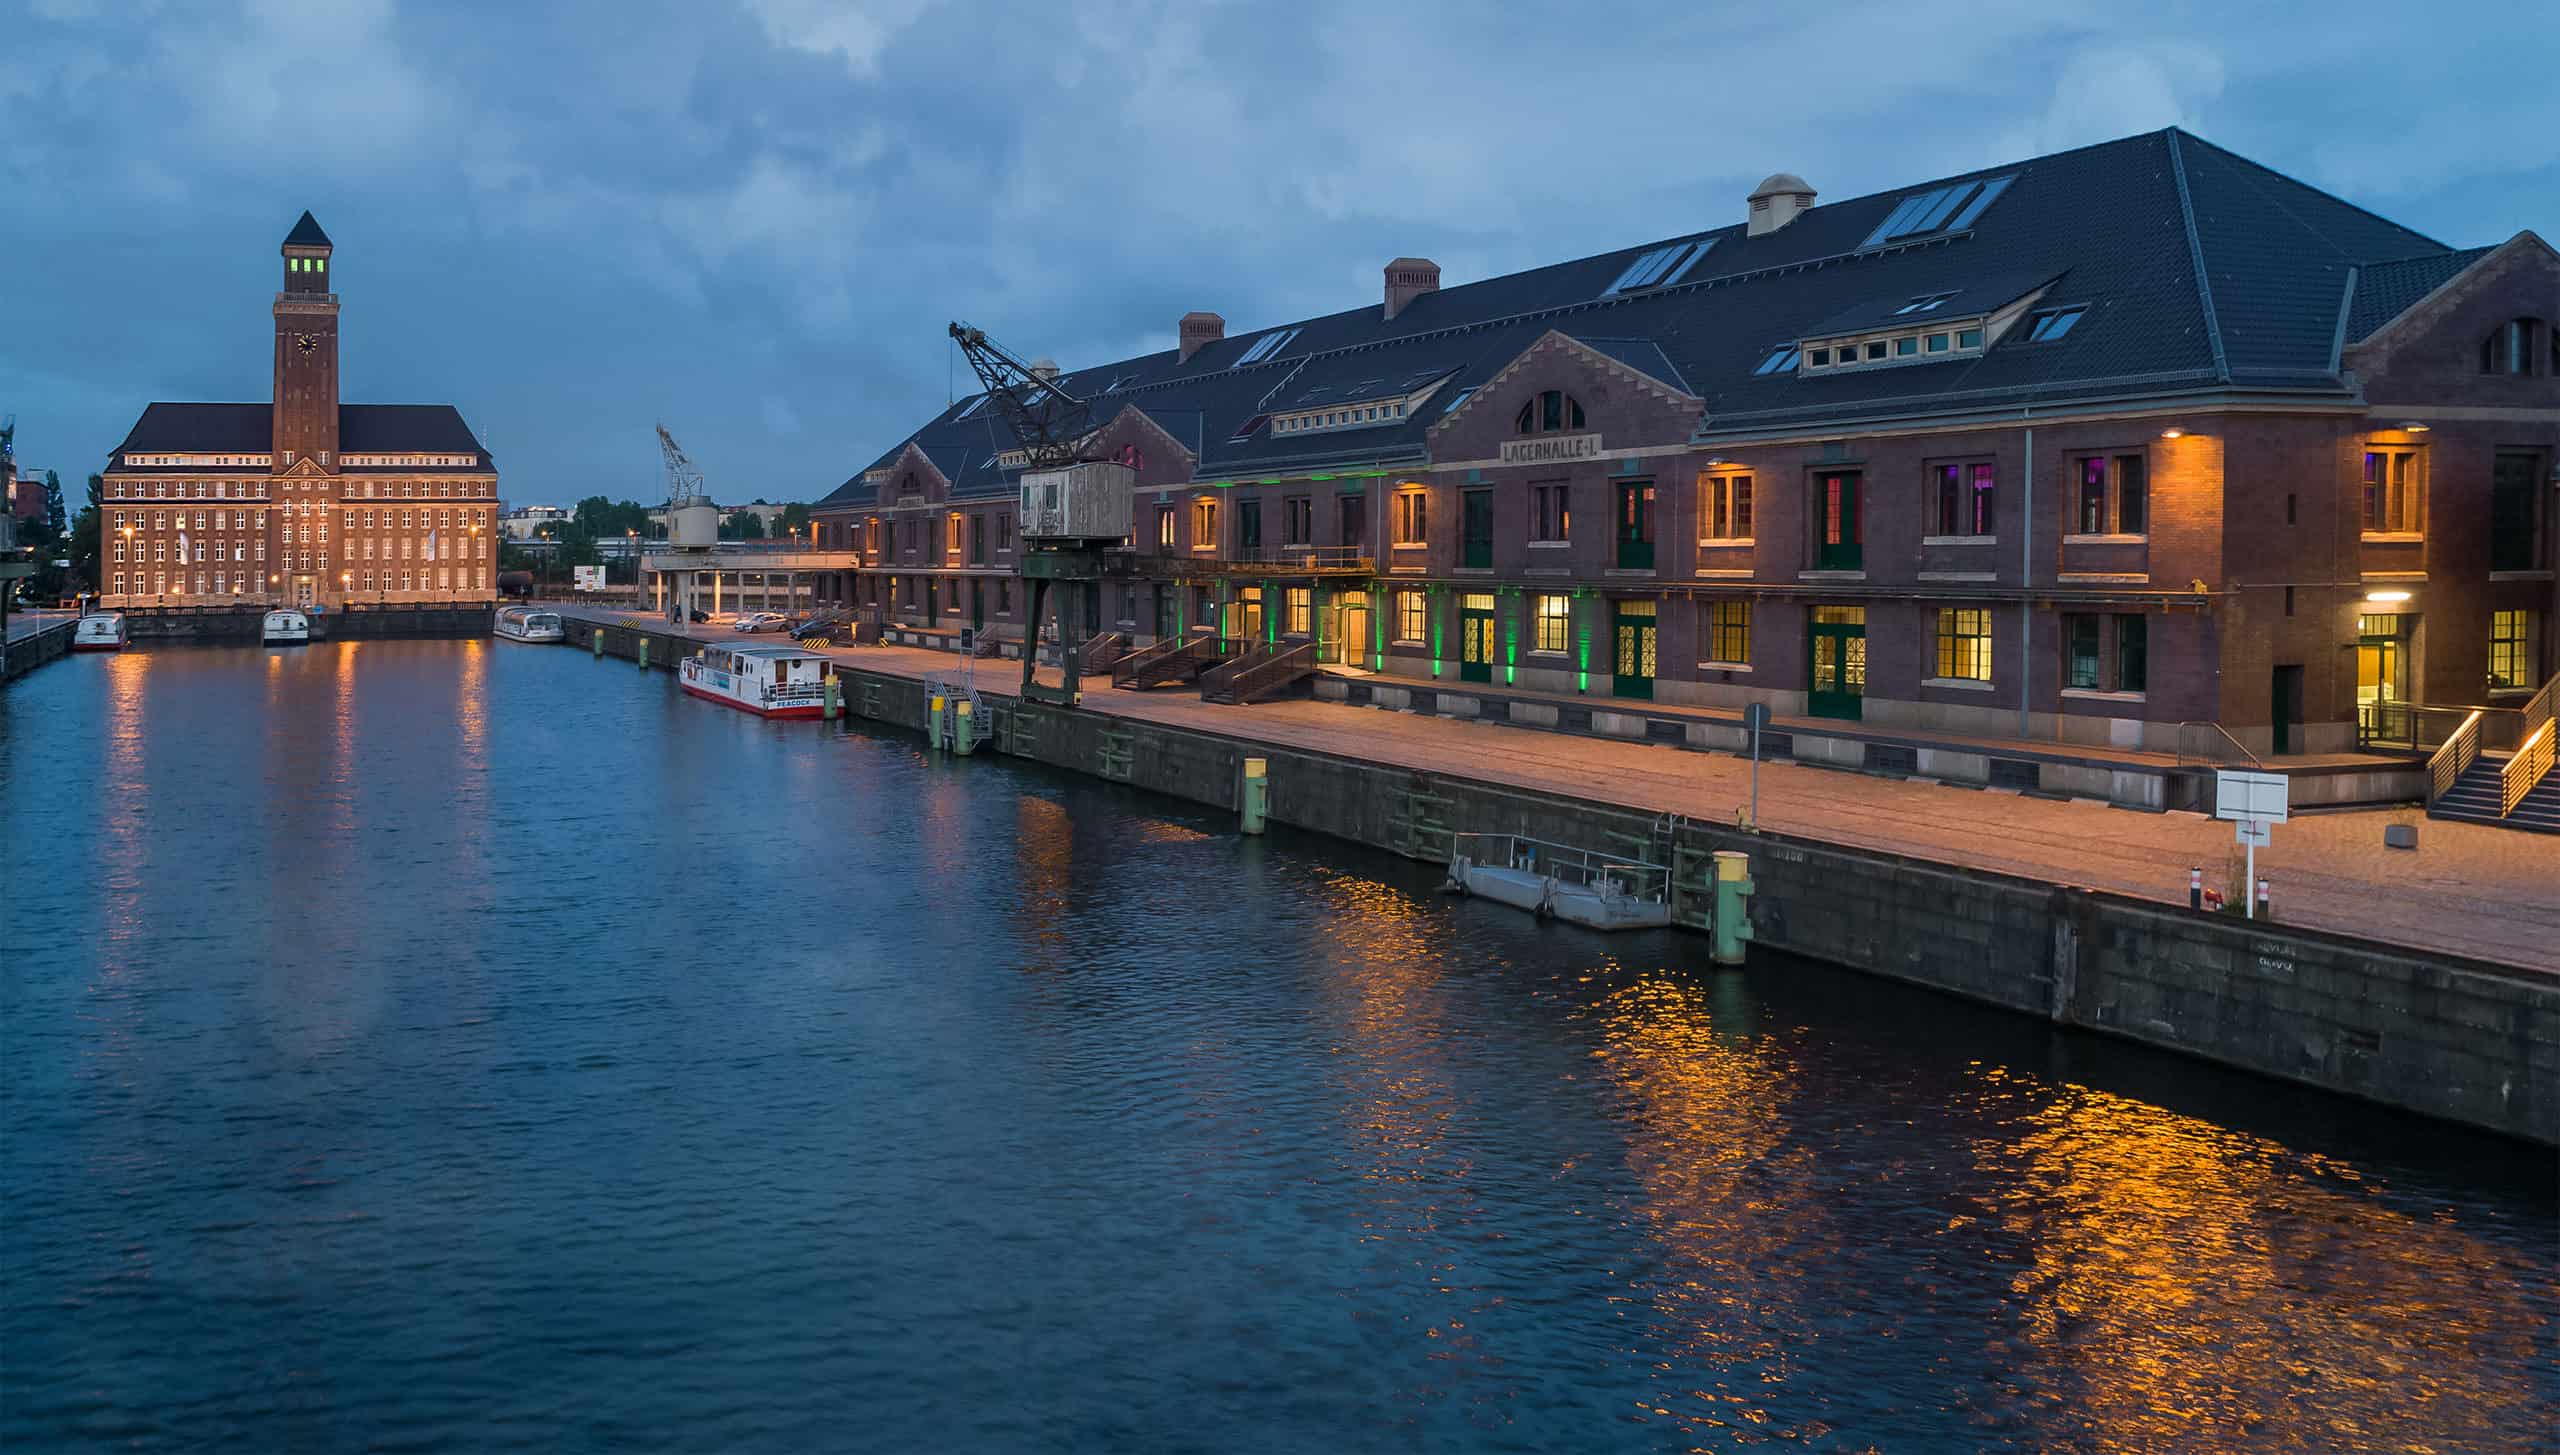 Ein Bild, das das malerische Ambiente des WECC einfängt, gelegen entlang des Westhafens, welcher die architektonische Schönheit der Stadt und ihre Wassermerkmale hervorhebt.